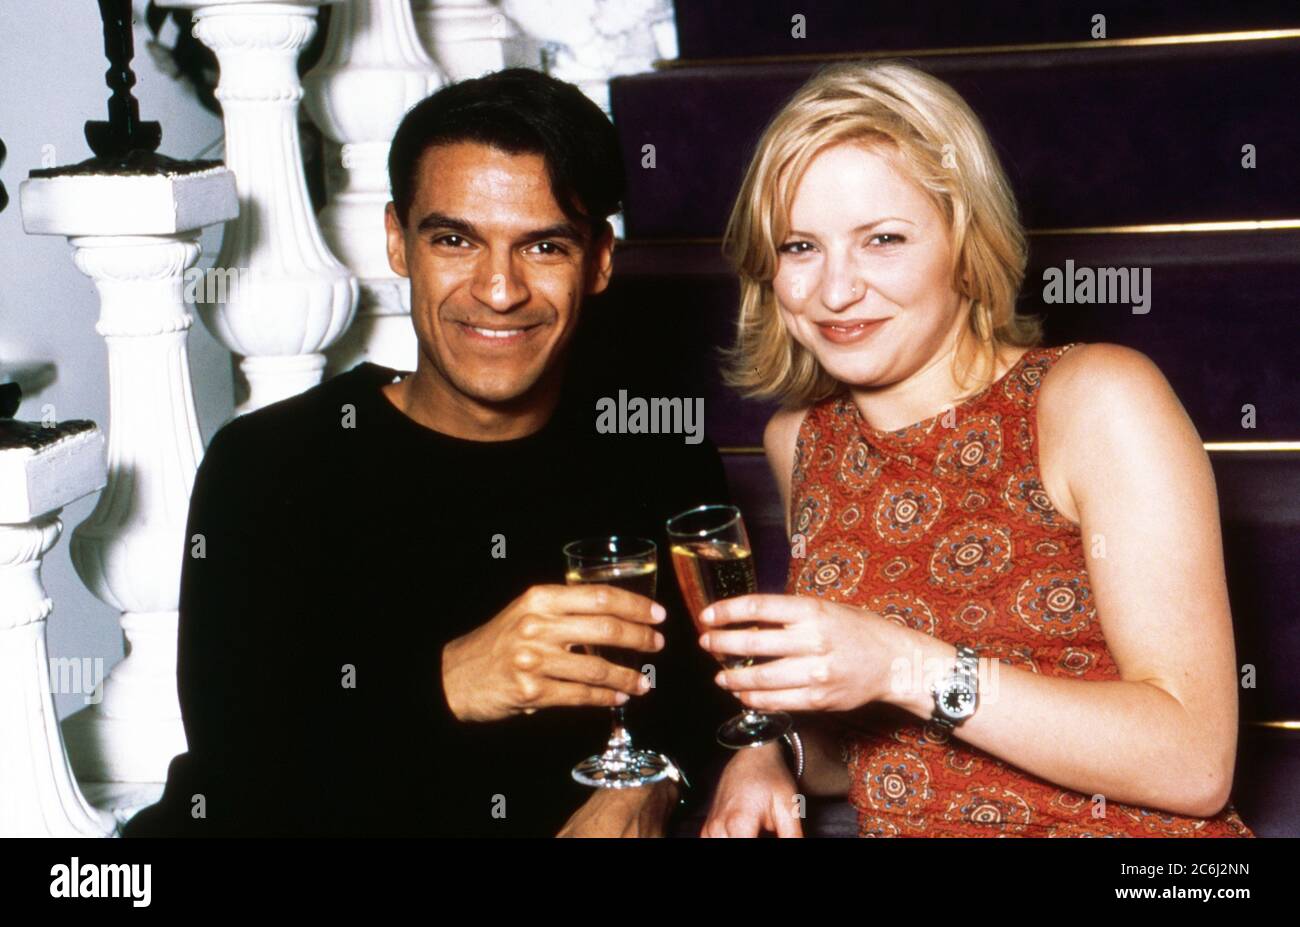 Michael Dierks und Diana Staehly, beide Schauspieler, genießen ein Glas Sekt, Deutschland 1999. Foto Stock